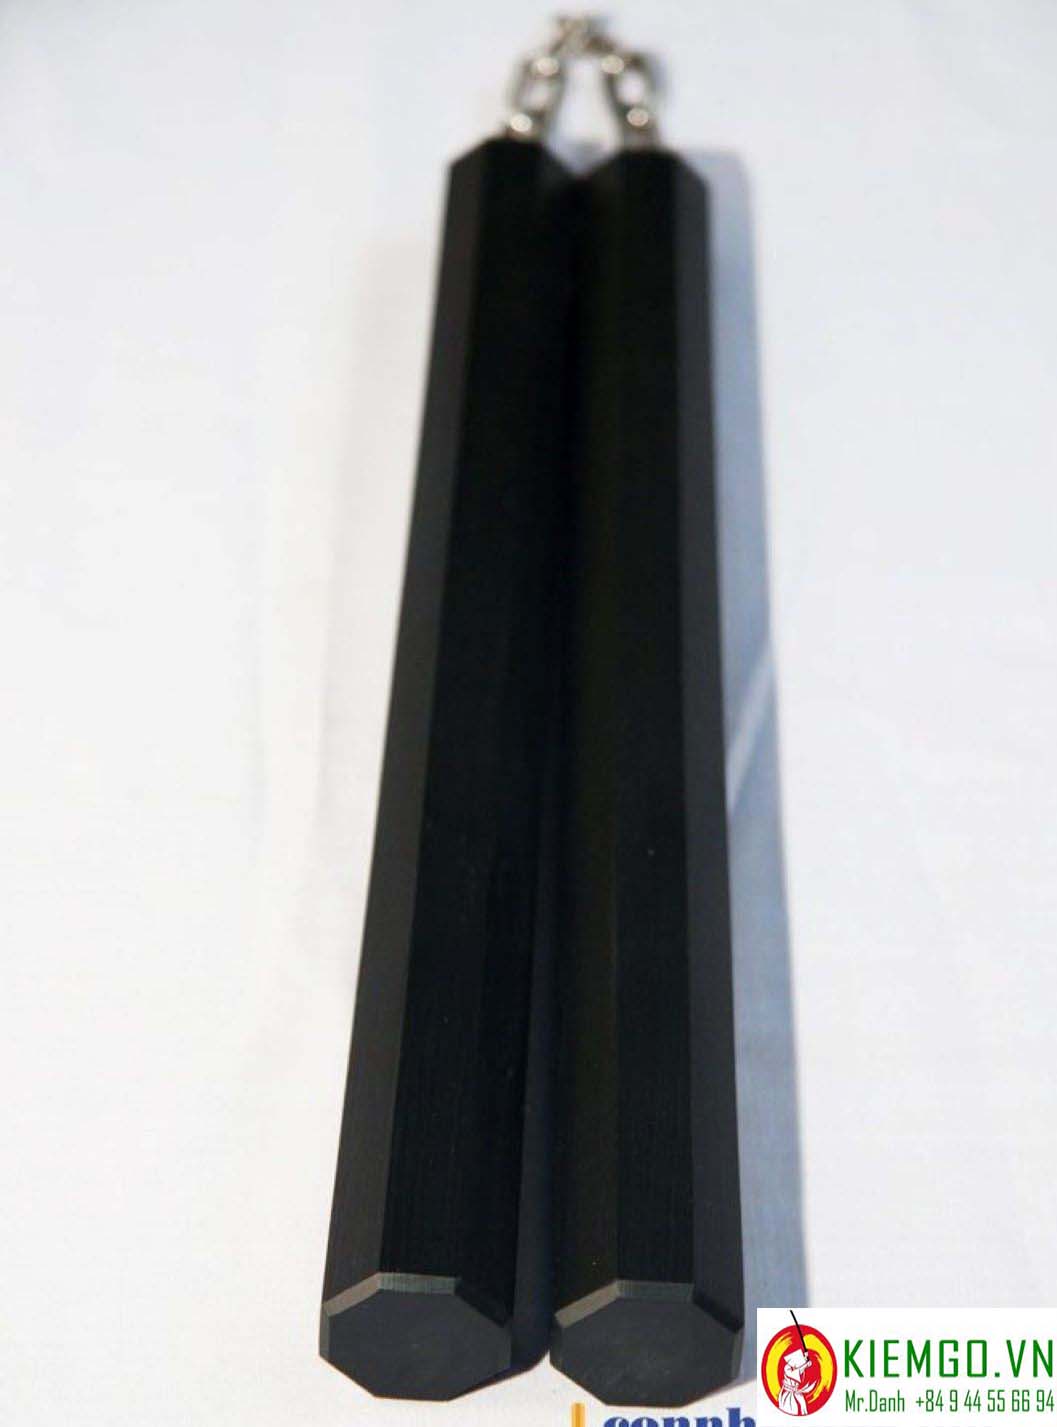 con-nhi-khuc-soi-tong-hop là mẫu côn siêu bền, màu đen bóng thật ngầu, gia công chuẩn sắc xảo, dây xích khớp xoay chắc chắn và linh hoạt